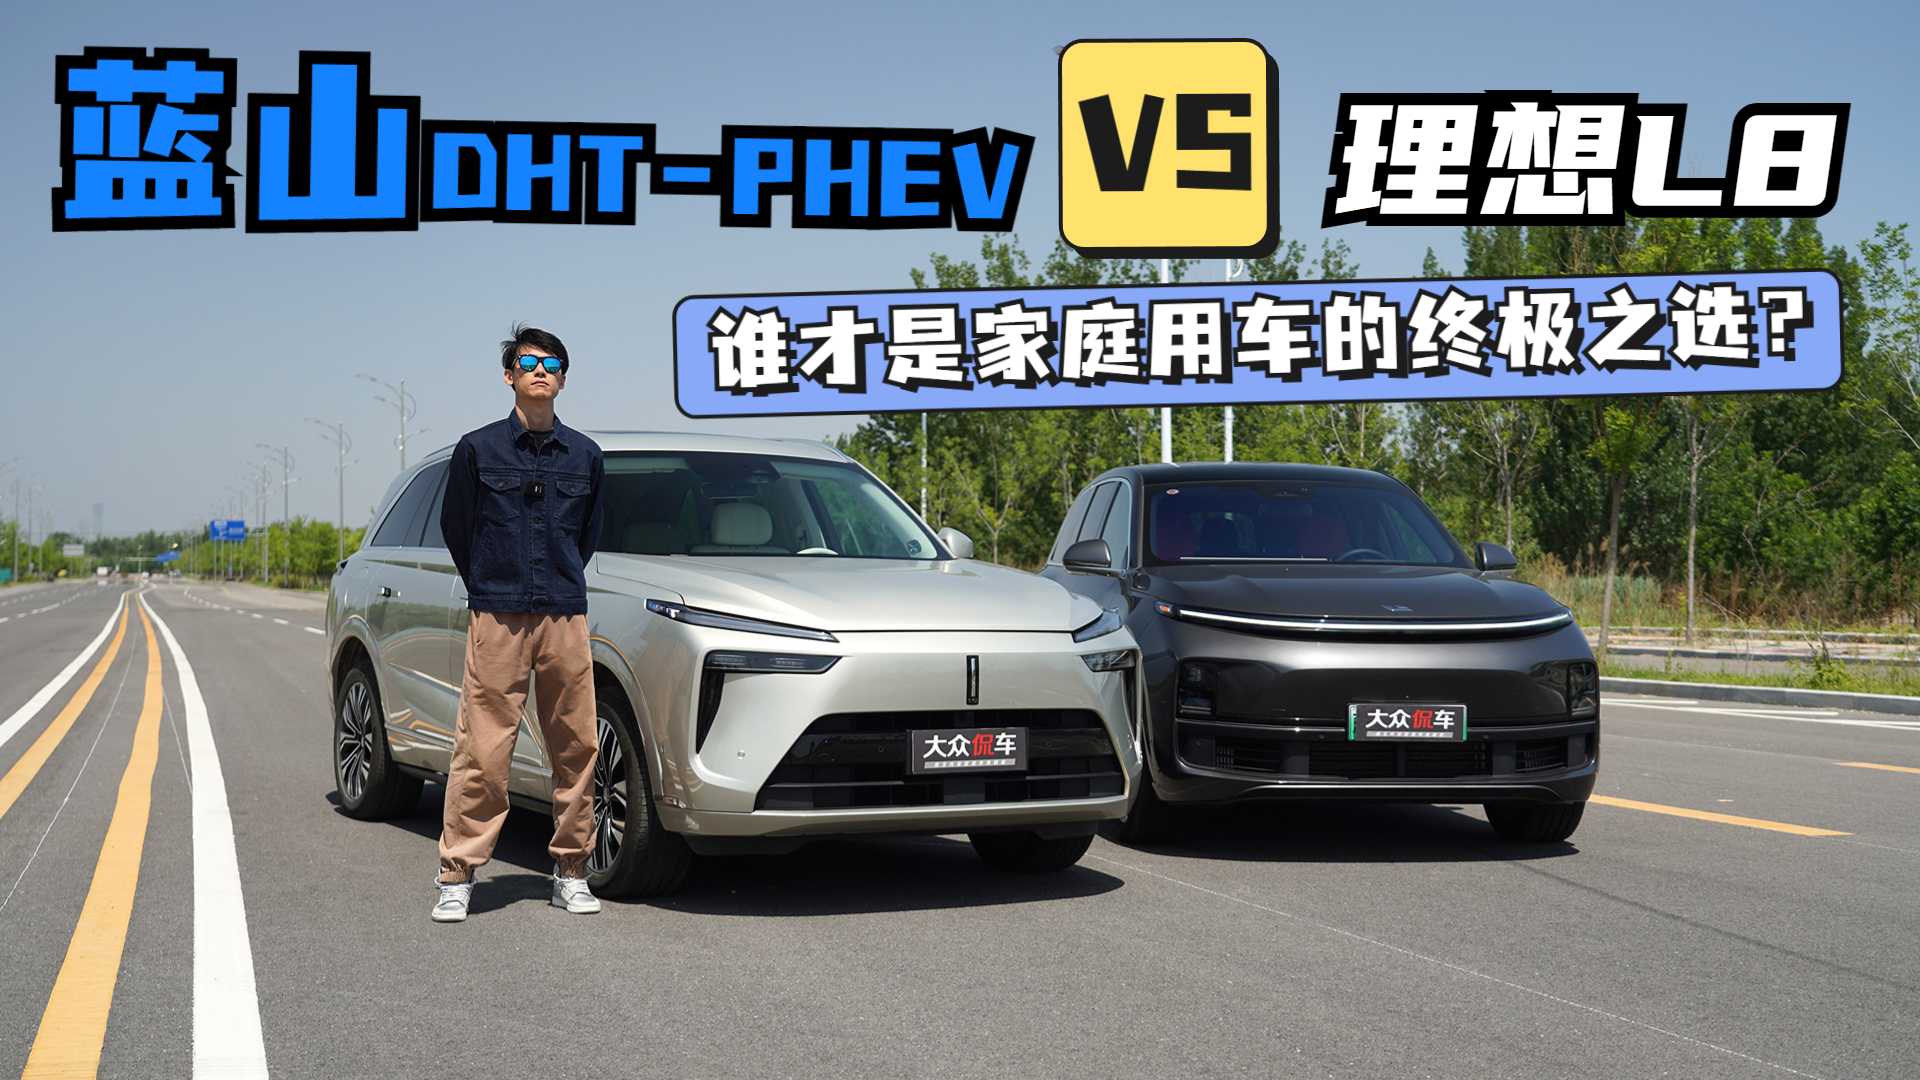 蓝山DHT-PHEV VS 理想L8，谁才是家庭用车的终极之选？